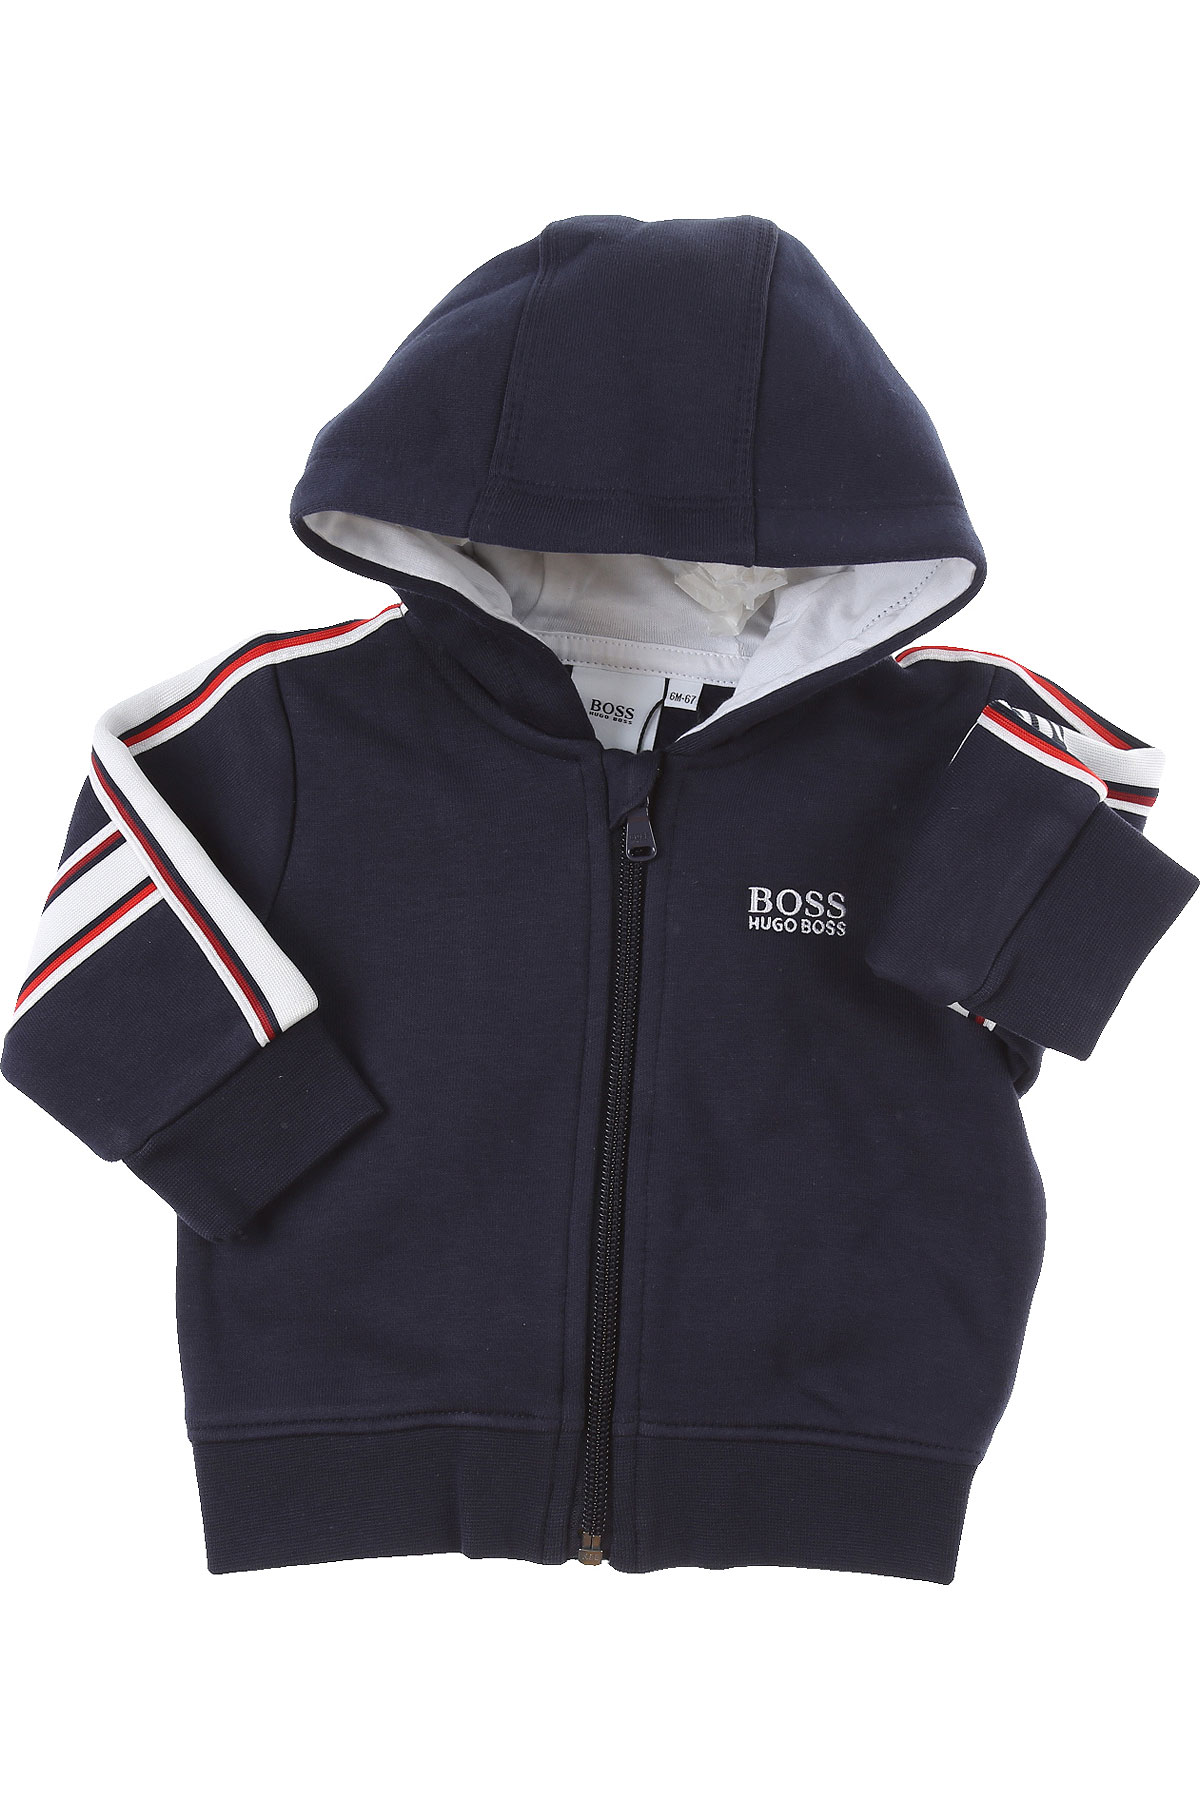 Hugo Boss Baby Sweatshirt & Kapuzenpullover für Jungen Günstig im Sale, Blau, Baumwolle, 2017, 12 M 18M 2Y 3Y 6M 9M